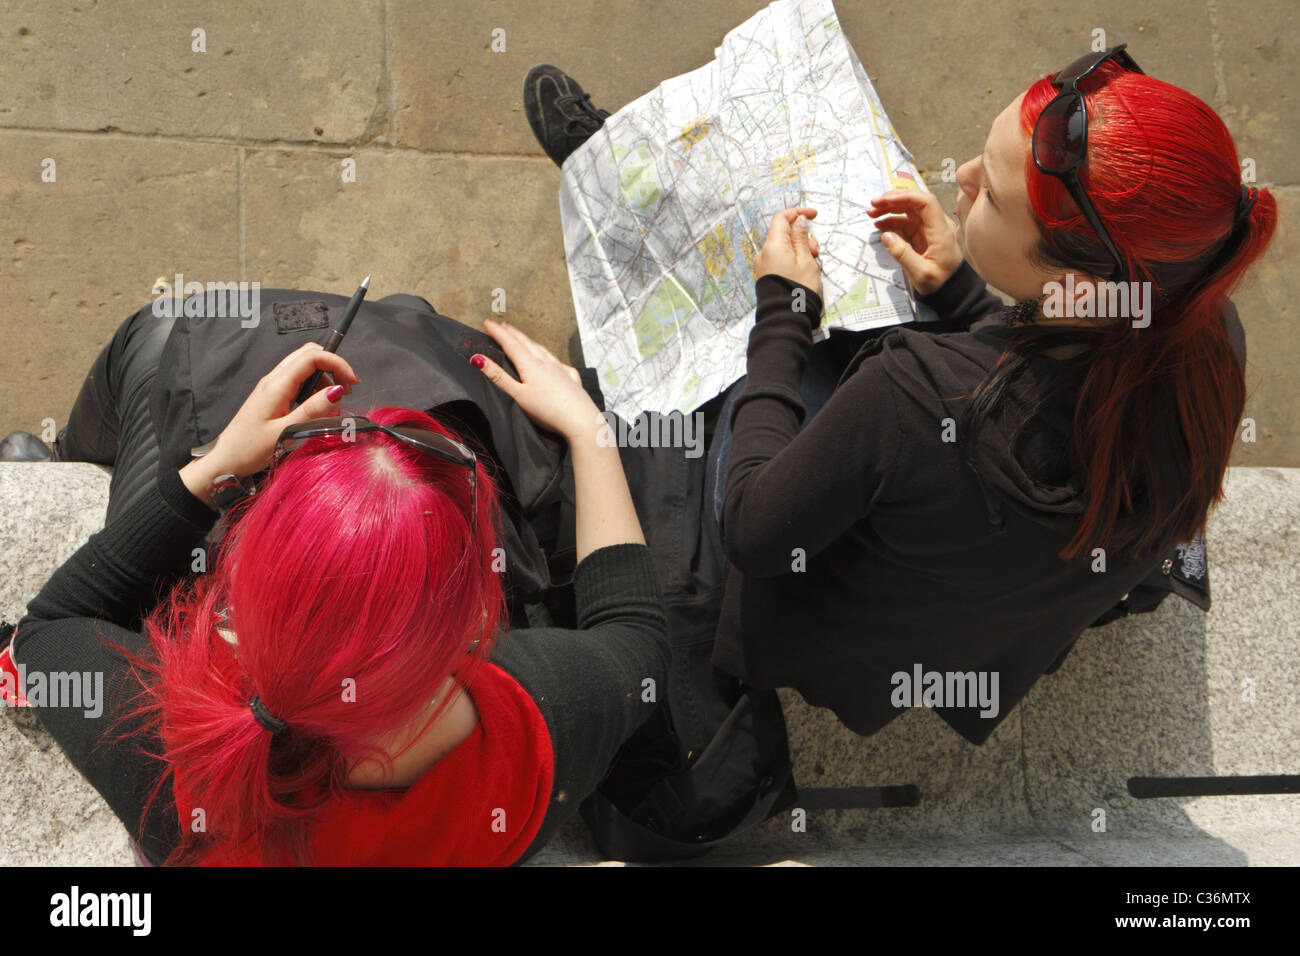 Dos jóvenes mujeres turistas teñida de rojo pelo consultando un mapa, Londres, Reino Unido. Foto de stock